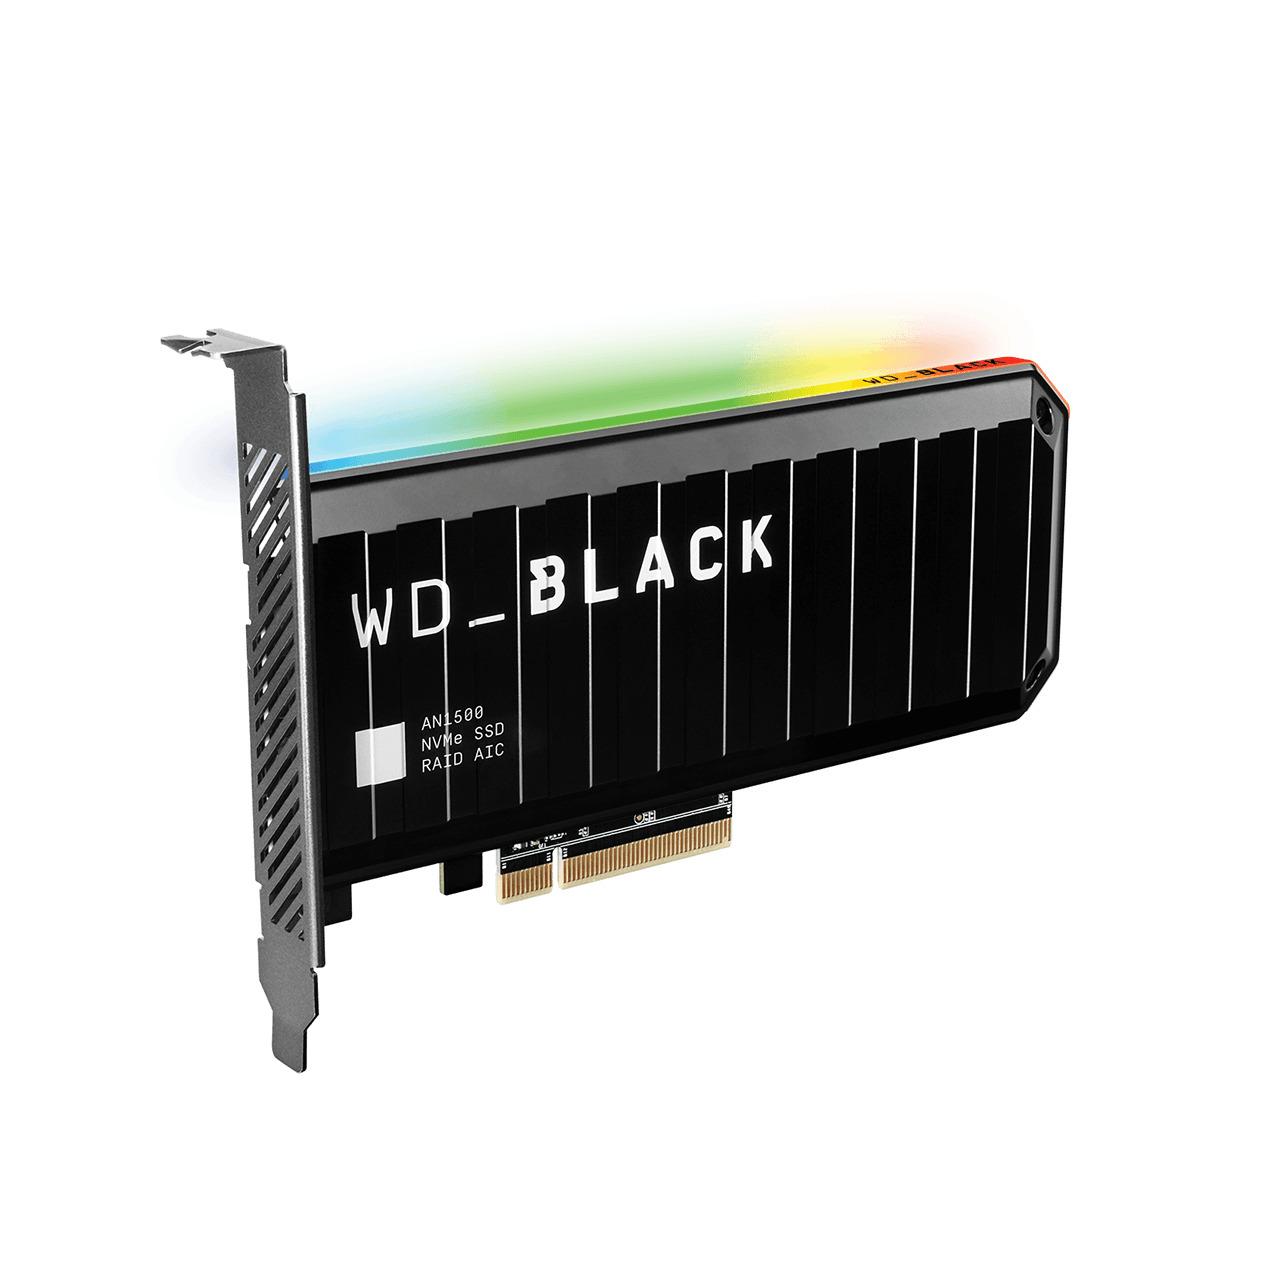 UNIDAD DE ESTADO SOLIDO SSD INTERNO WD BLACK AN1500 1TB M.2 2280 NVME PCIE GEN3 X8 LECT.6500MBS ESCRIT.4100MBS GAMER DISIPADOR RGB - WESTERN DIGITAL